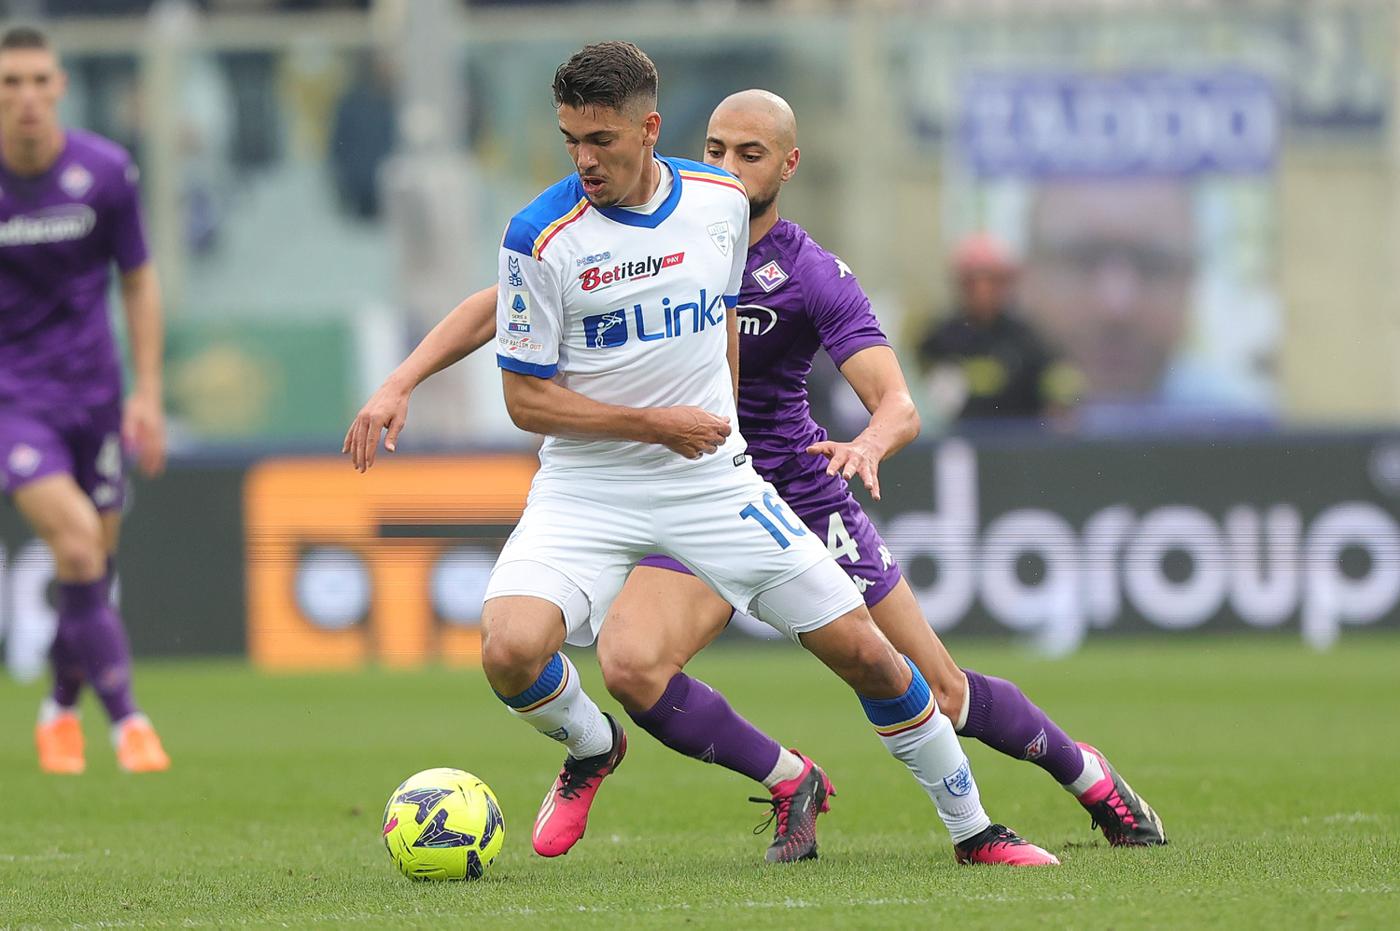 Fiorentina - Lecce - 1:0. Italian Championship, round 27. Match review, statistics